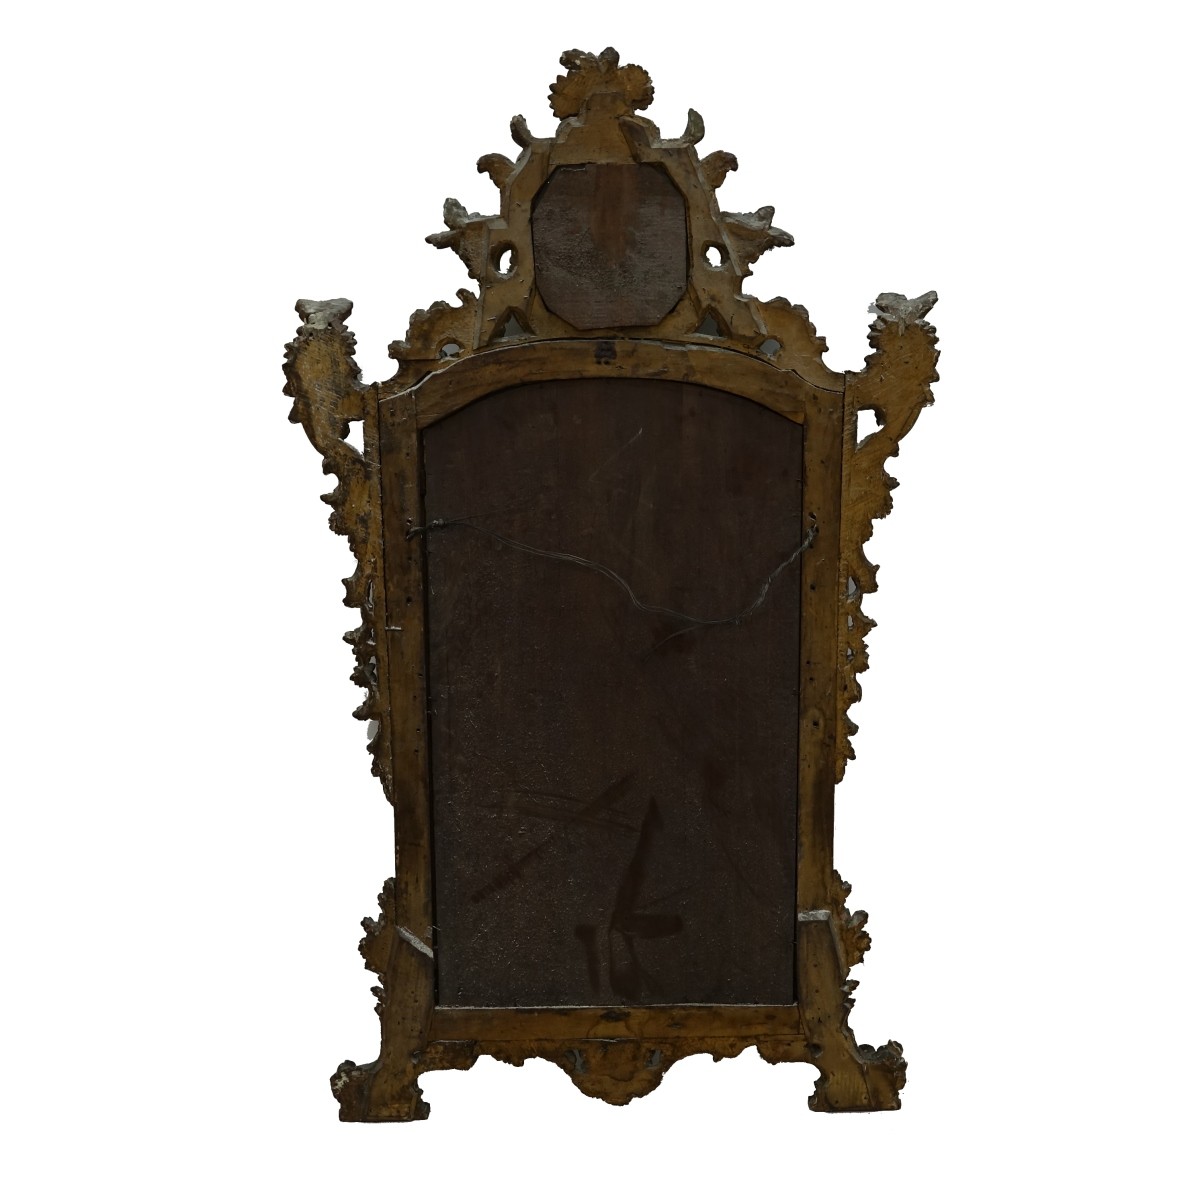 19th C. Louis XVI Style Mirror